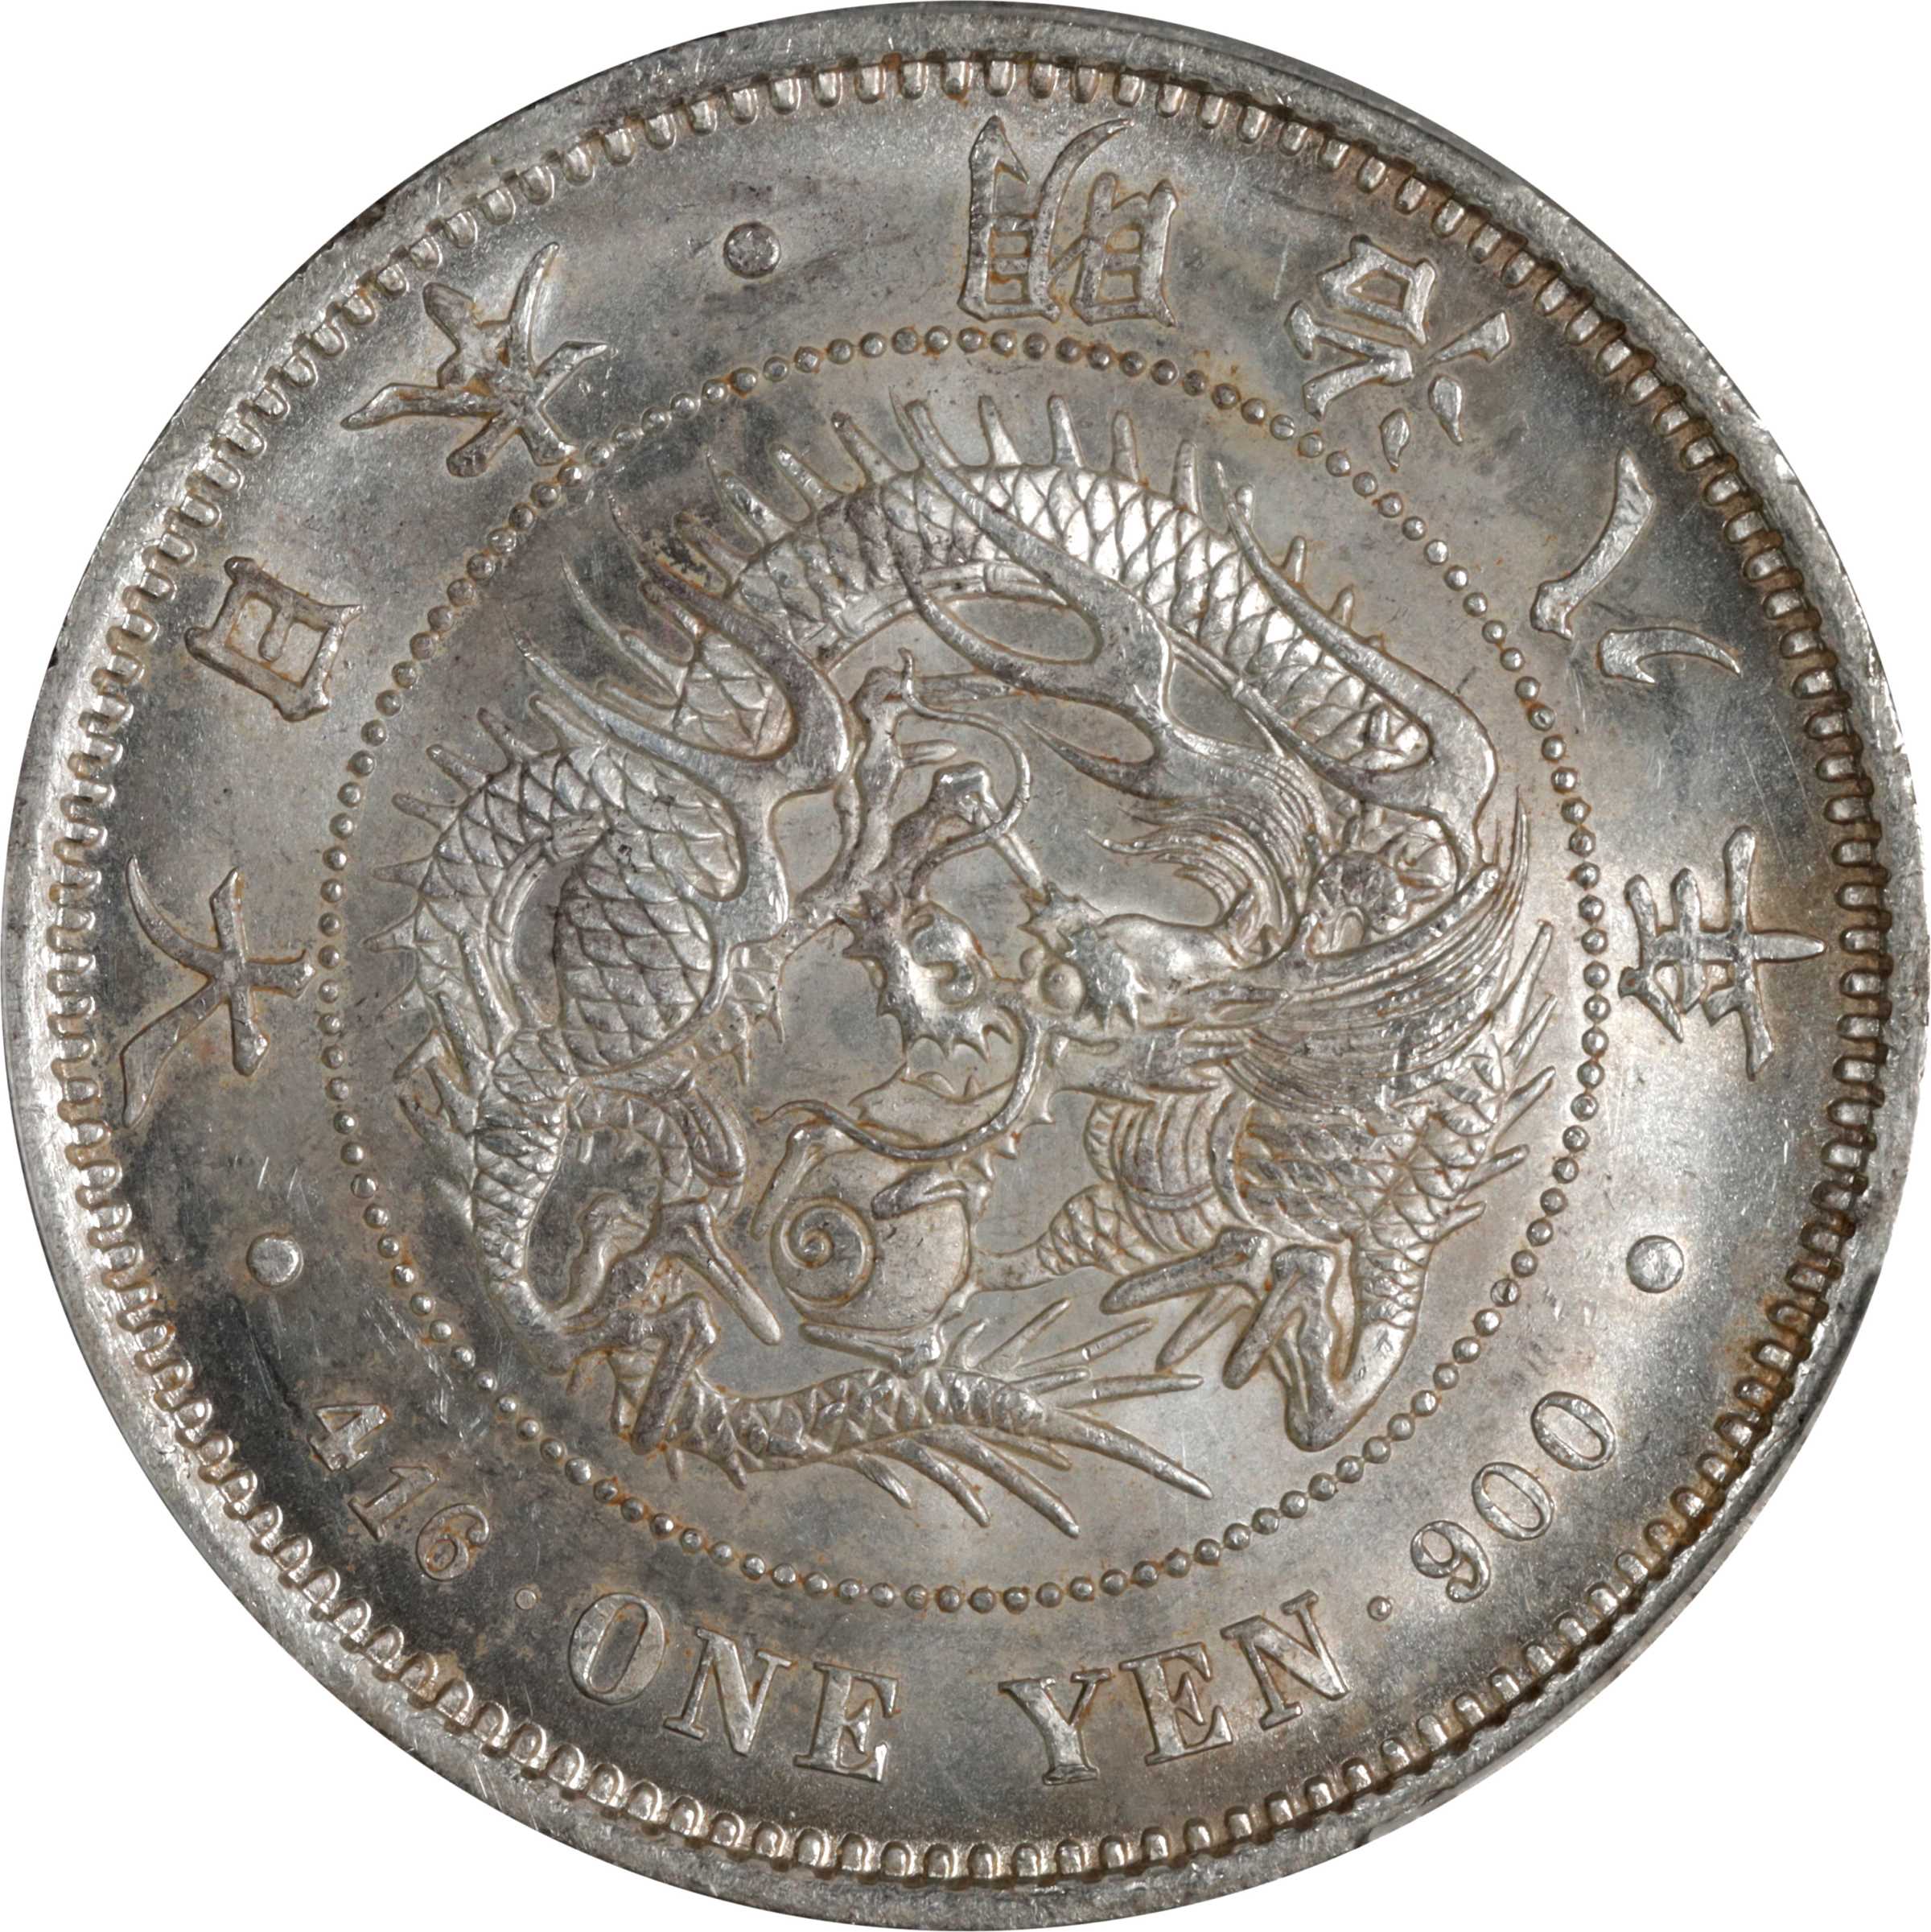 JAPAN. Yen, Year 8 (1875). Osaka Mint. Mutsuhito (Meiji). PCGS MS 